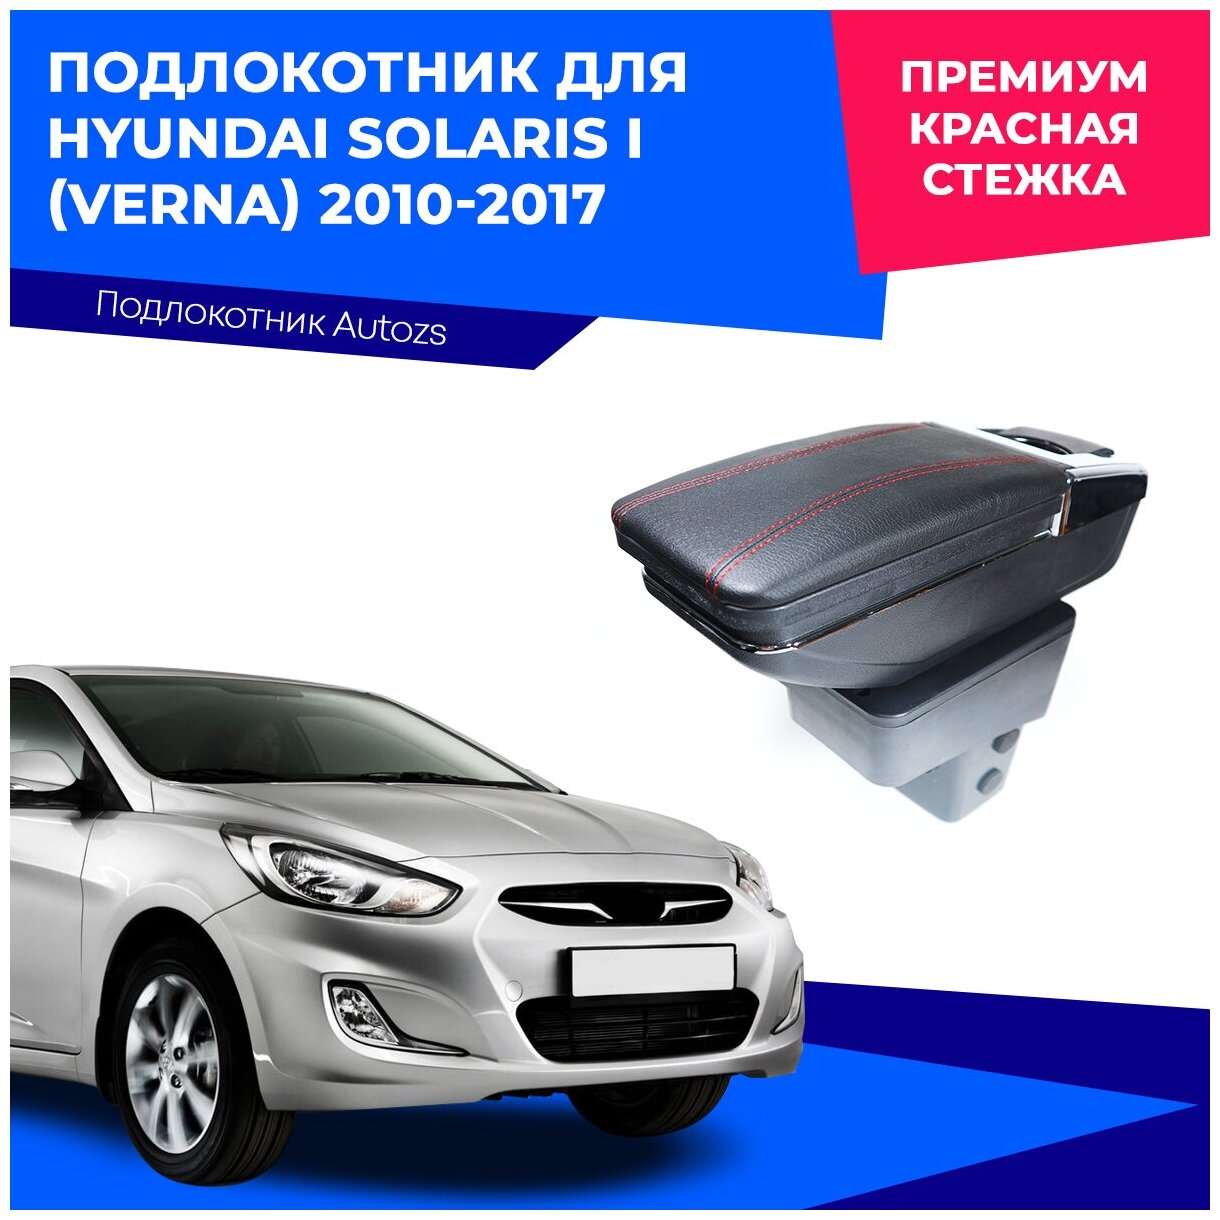 Подлокотник для Hyundai Solaris I (Verna)2010-2017 / Хендай Солярис (Верна) 1 2010-2017 Премиум, красная строчка экокожа